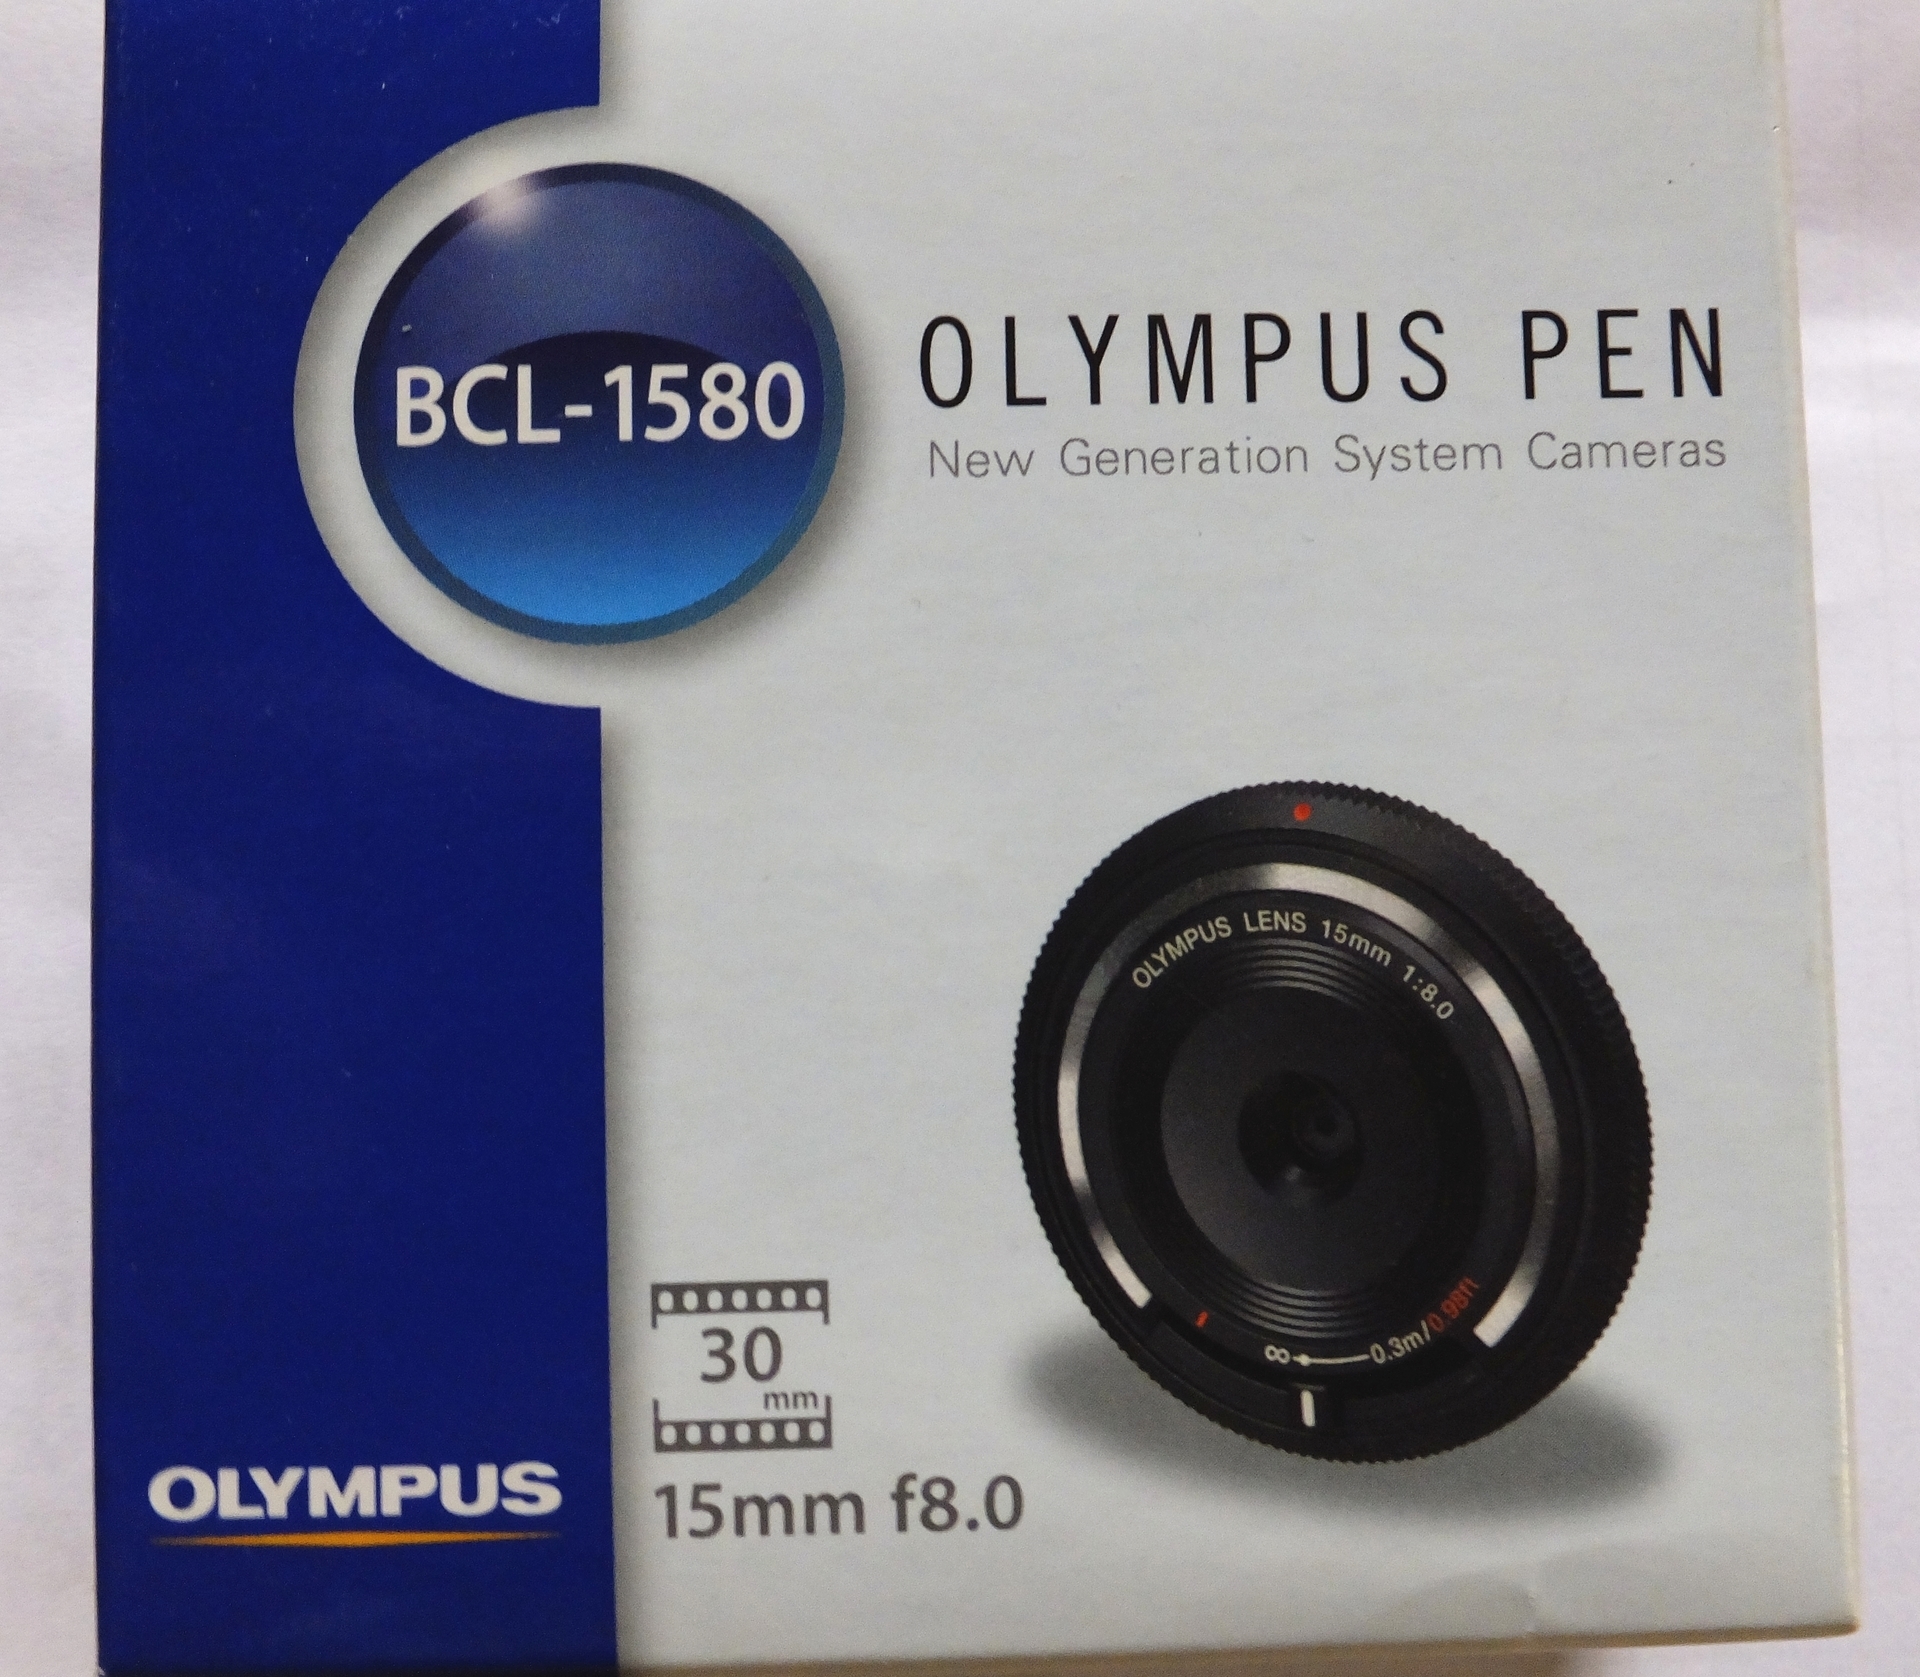 OLYMPUS LENS 15mmF8.0 ボディキャップレンズ